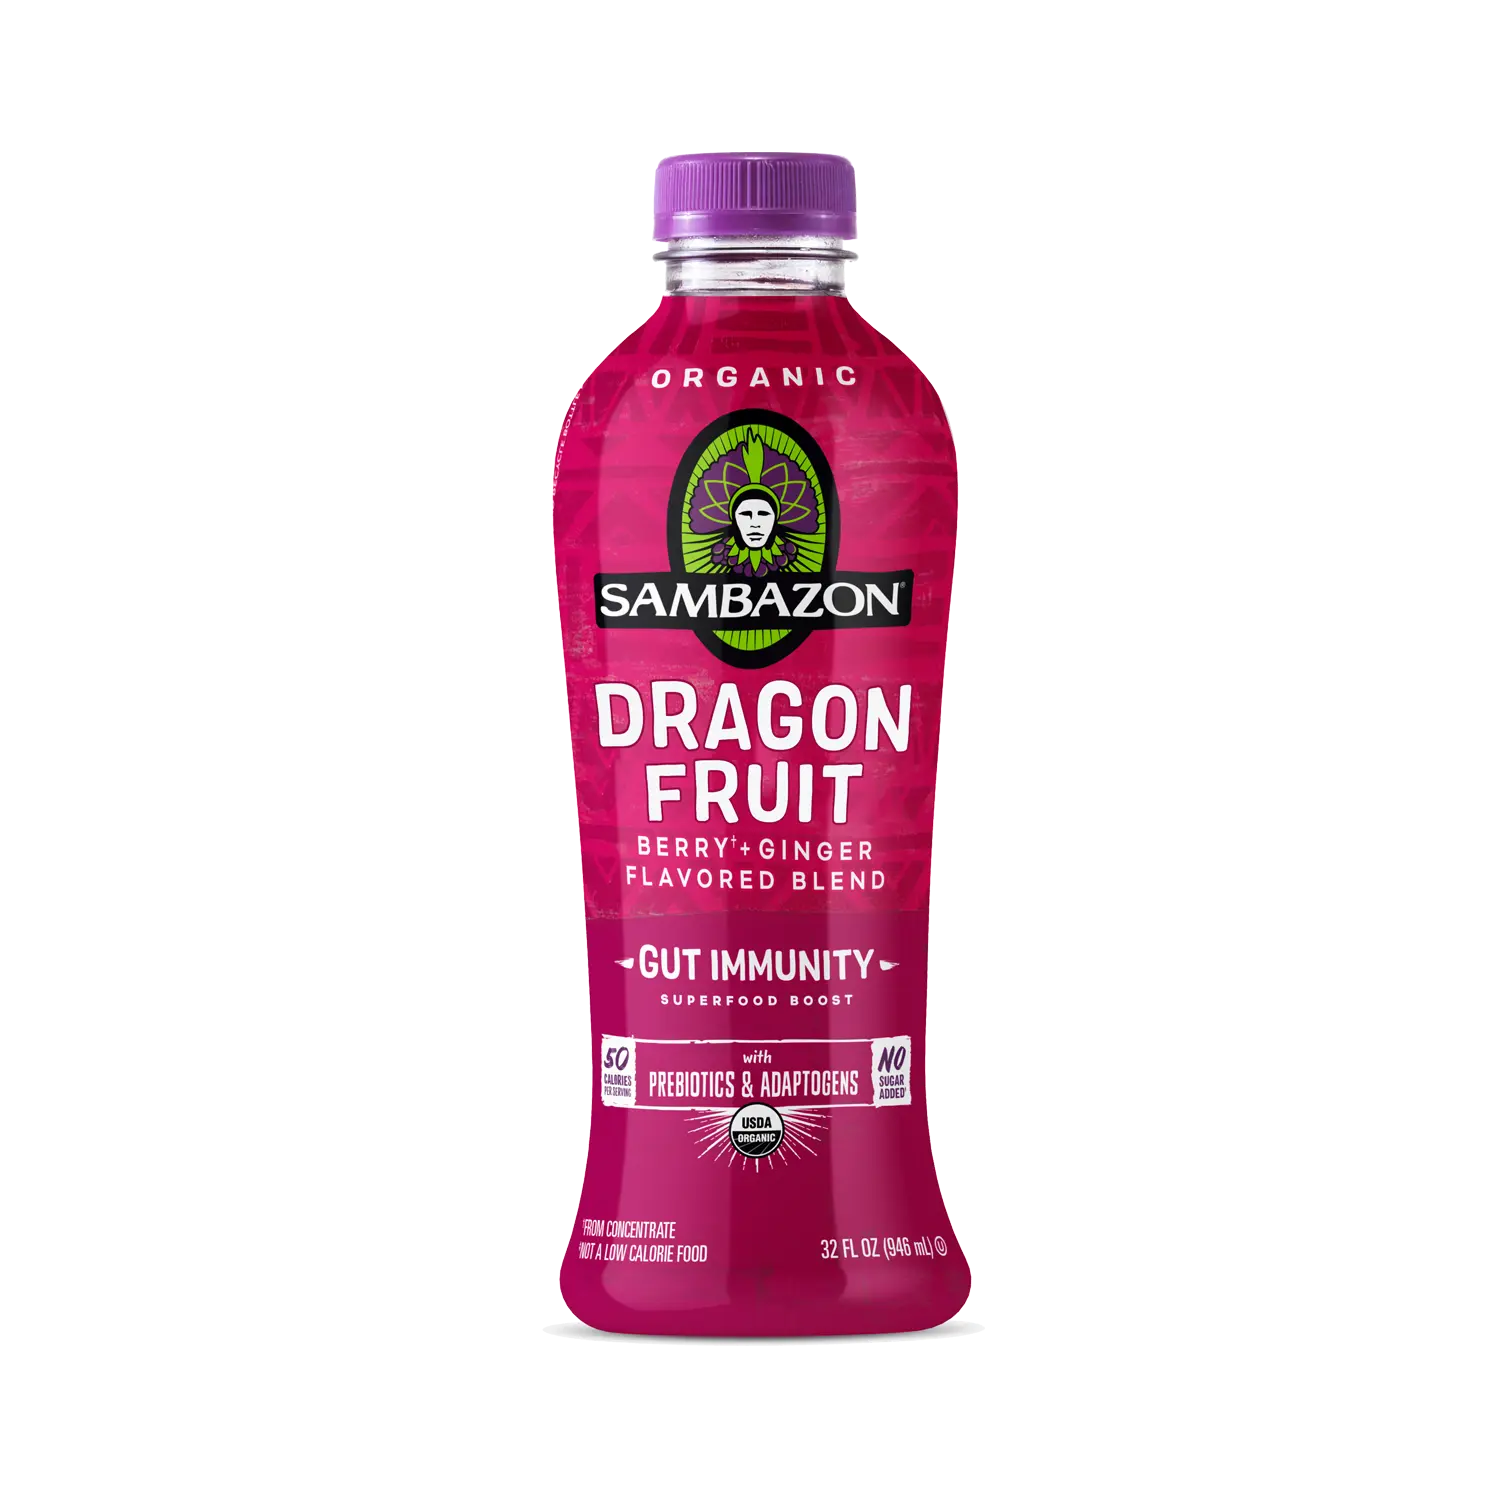 Dragon Fruit Drink - Organic Pitaya Blend